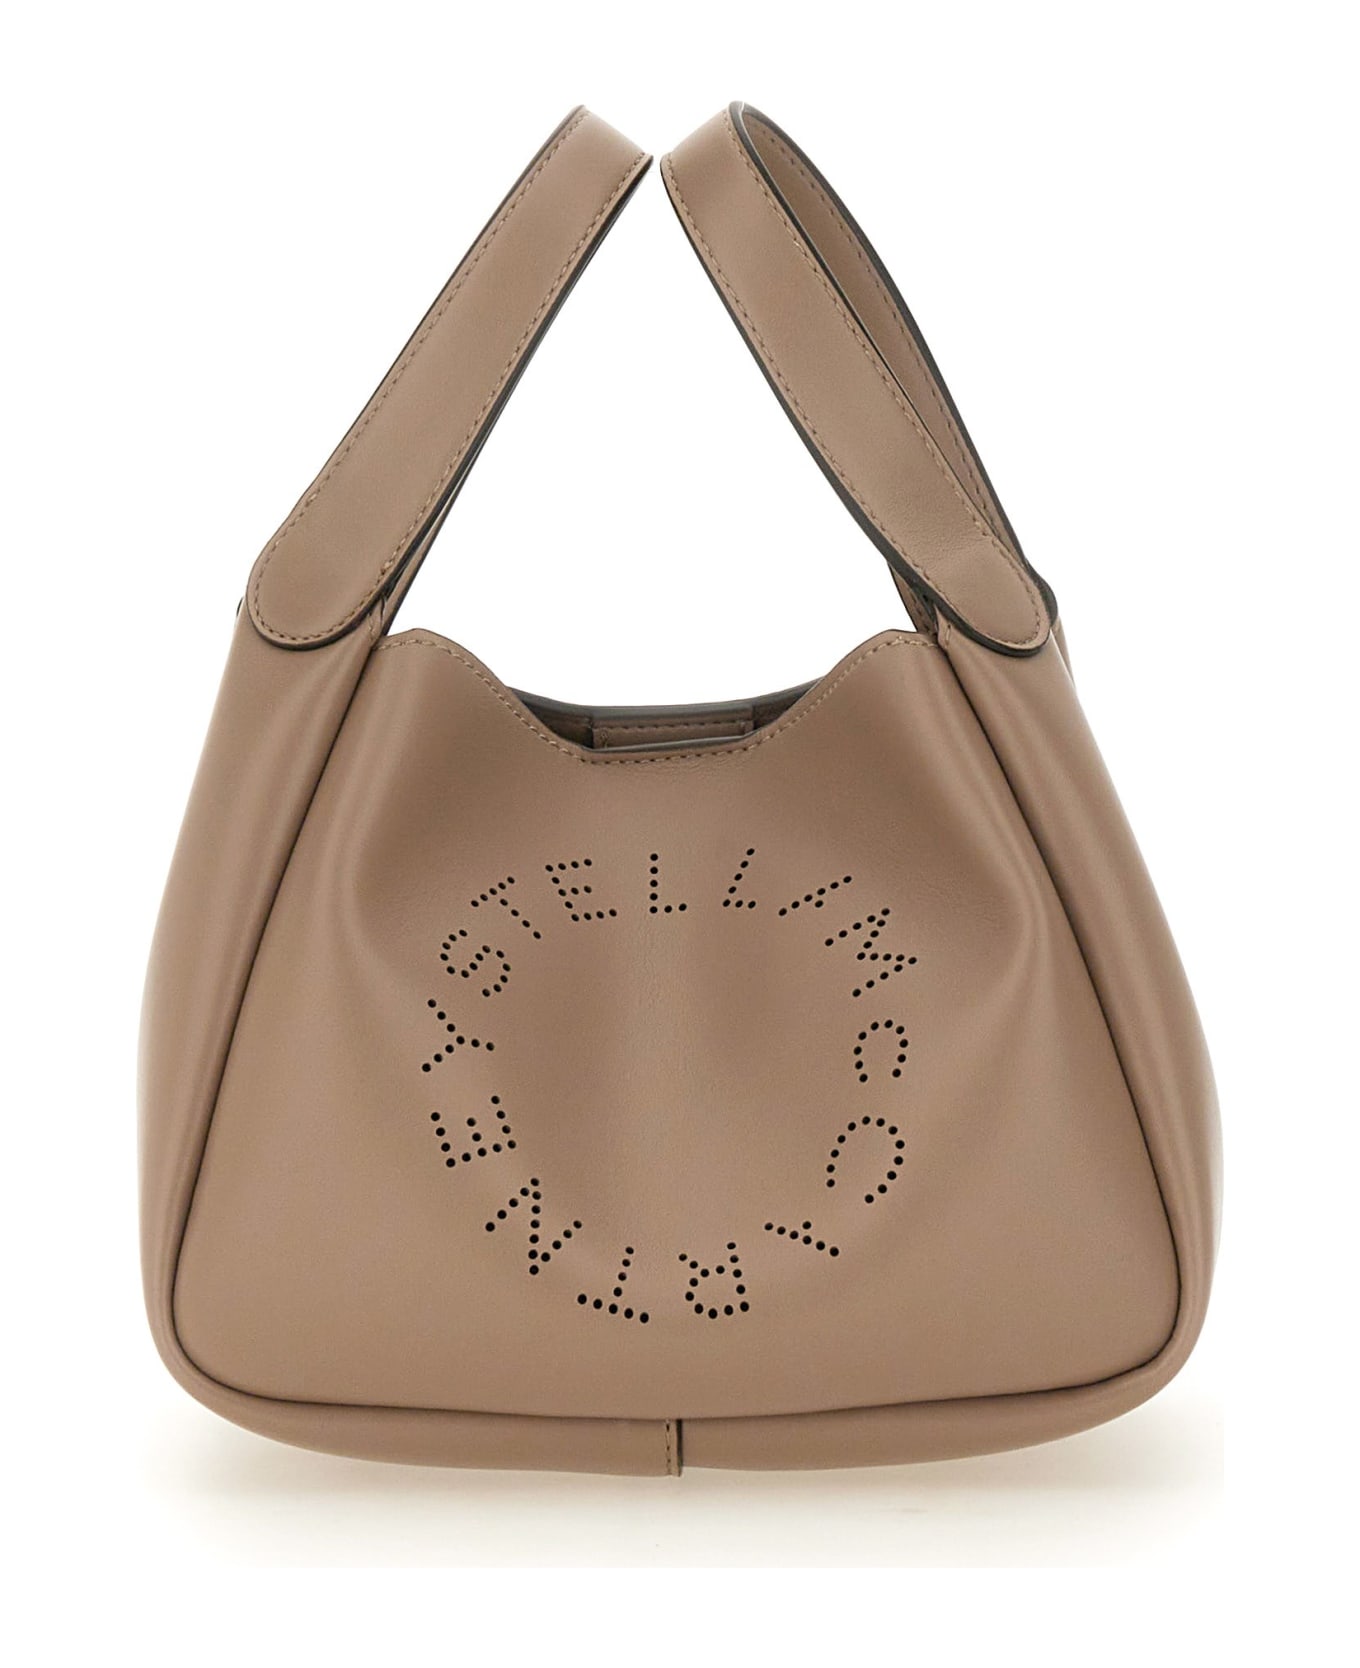 Stella McCartney Shoulder Bag With Logo - BEIGE